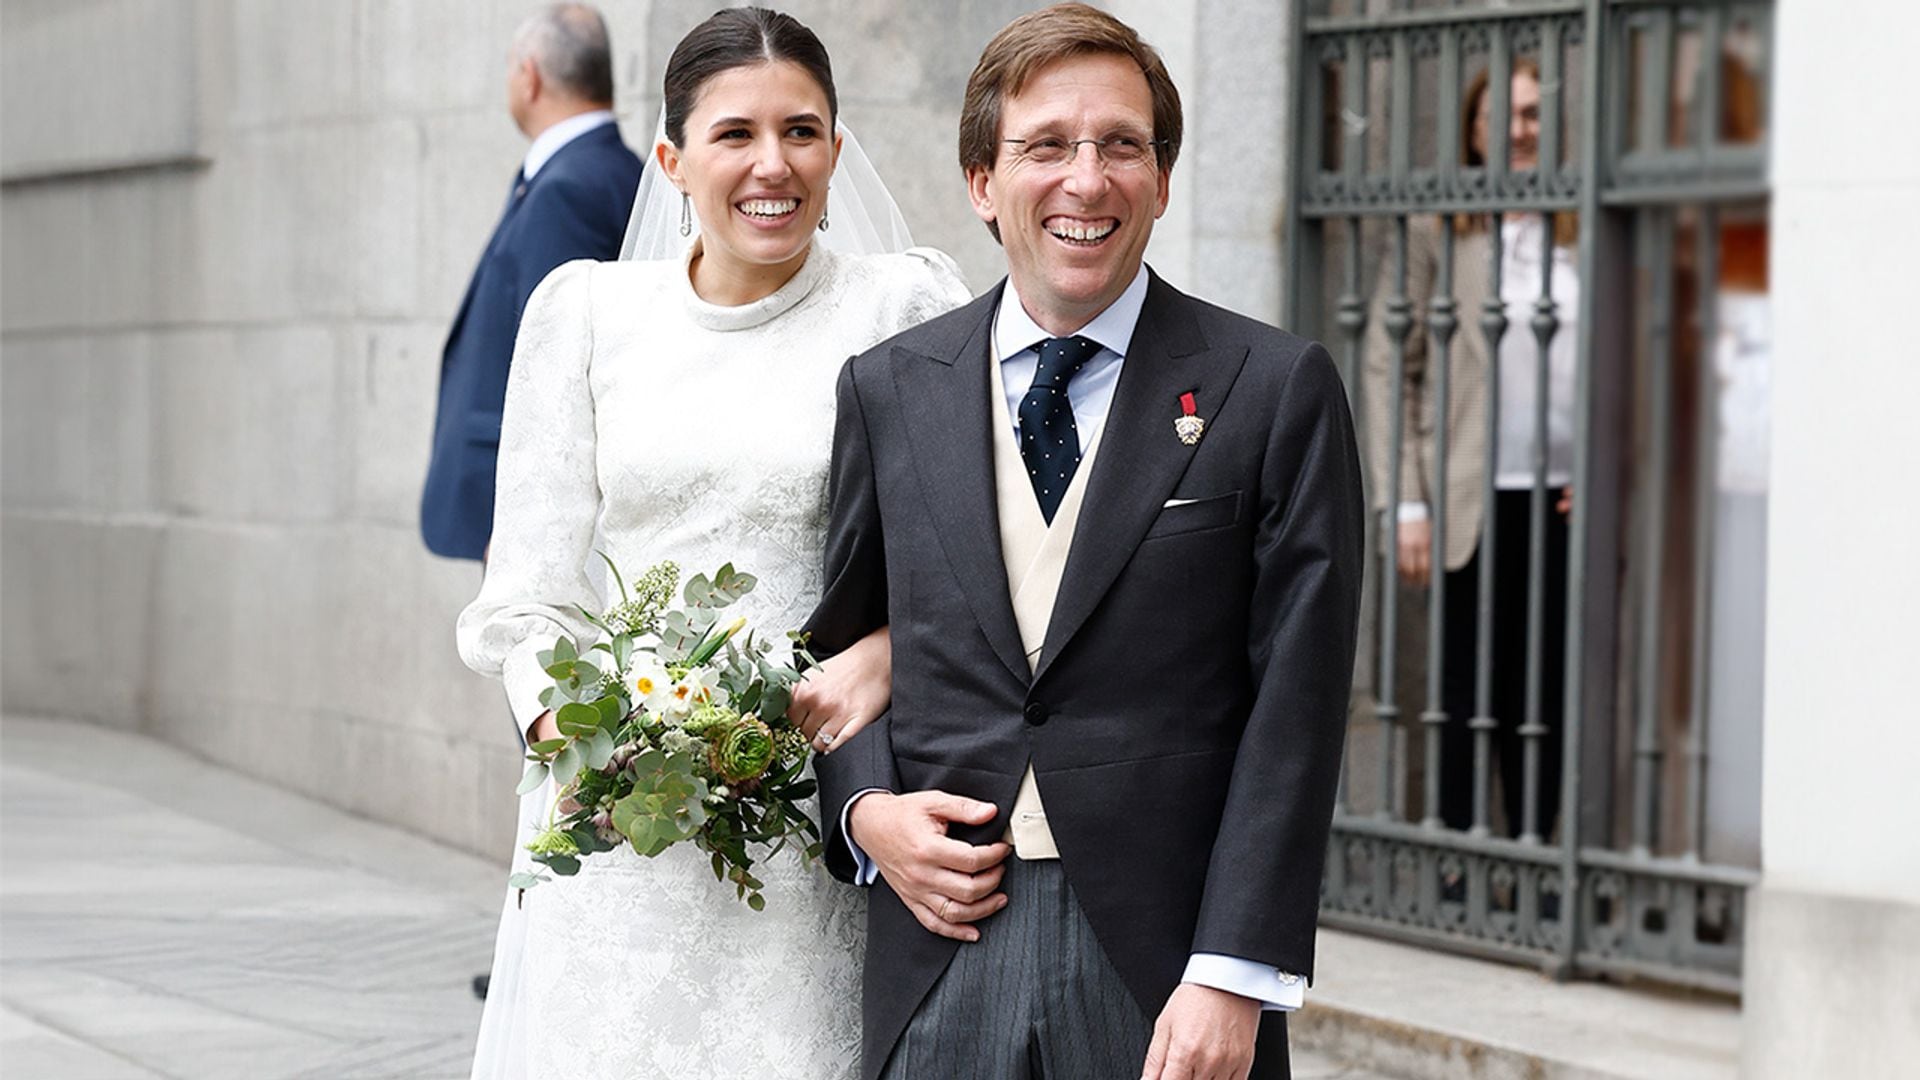 Teresa Urquijo y otras novias españolas que han reutilizado vestidos familiares en sus bodas